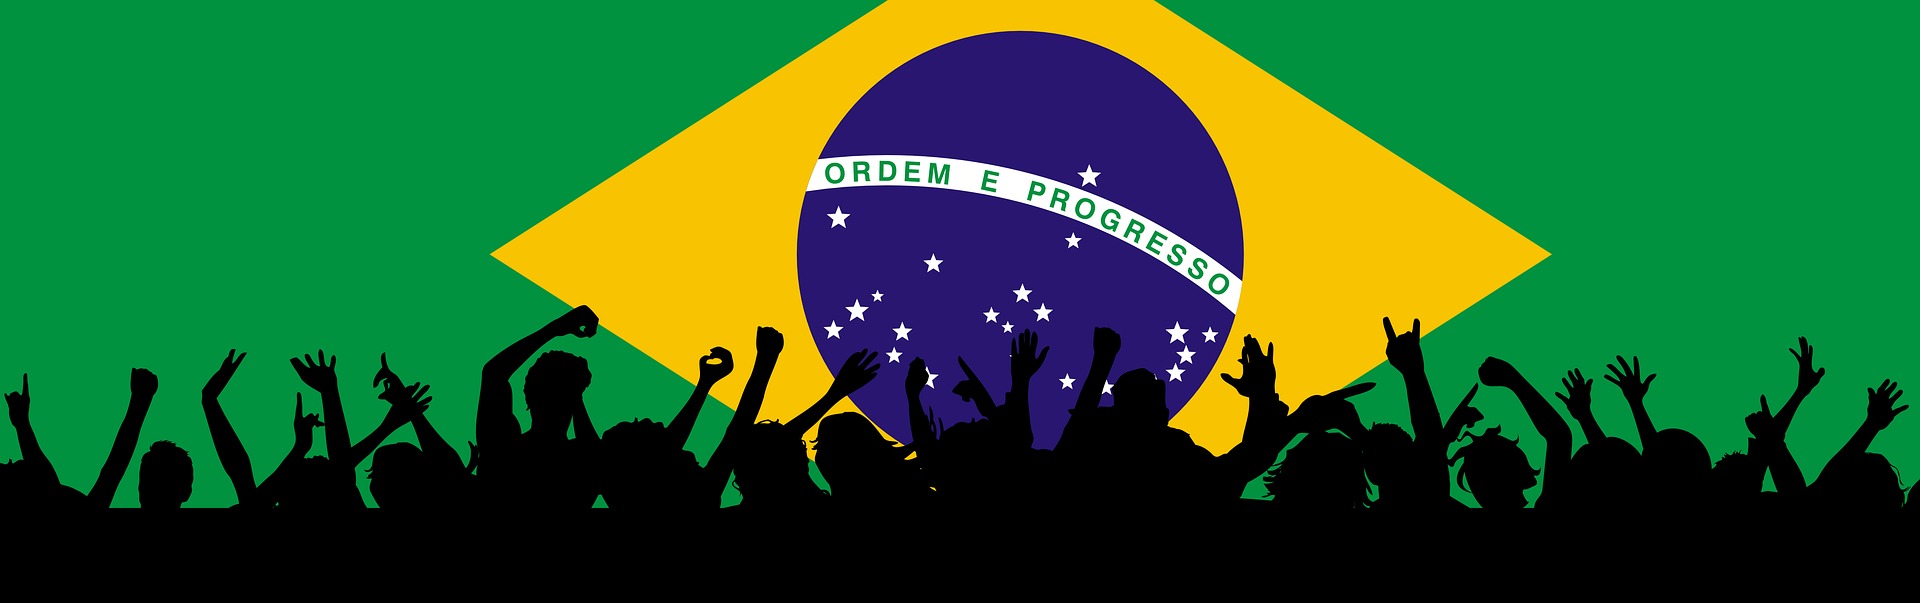 immagine vettoriale con sillhoette di persone che ballano con la bandiera del brasile alle spalle